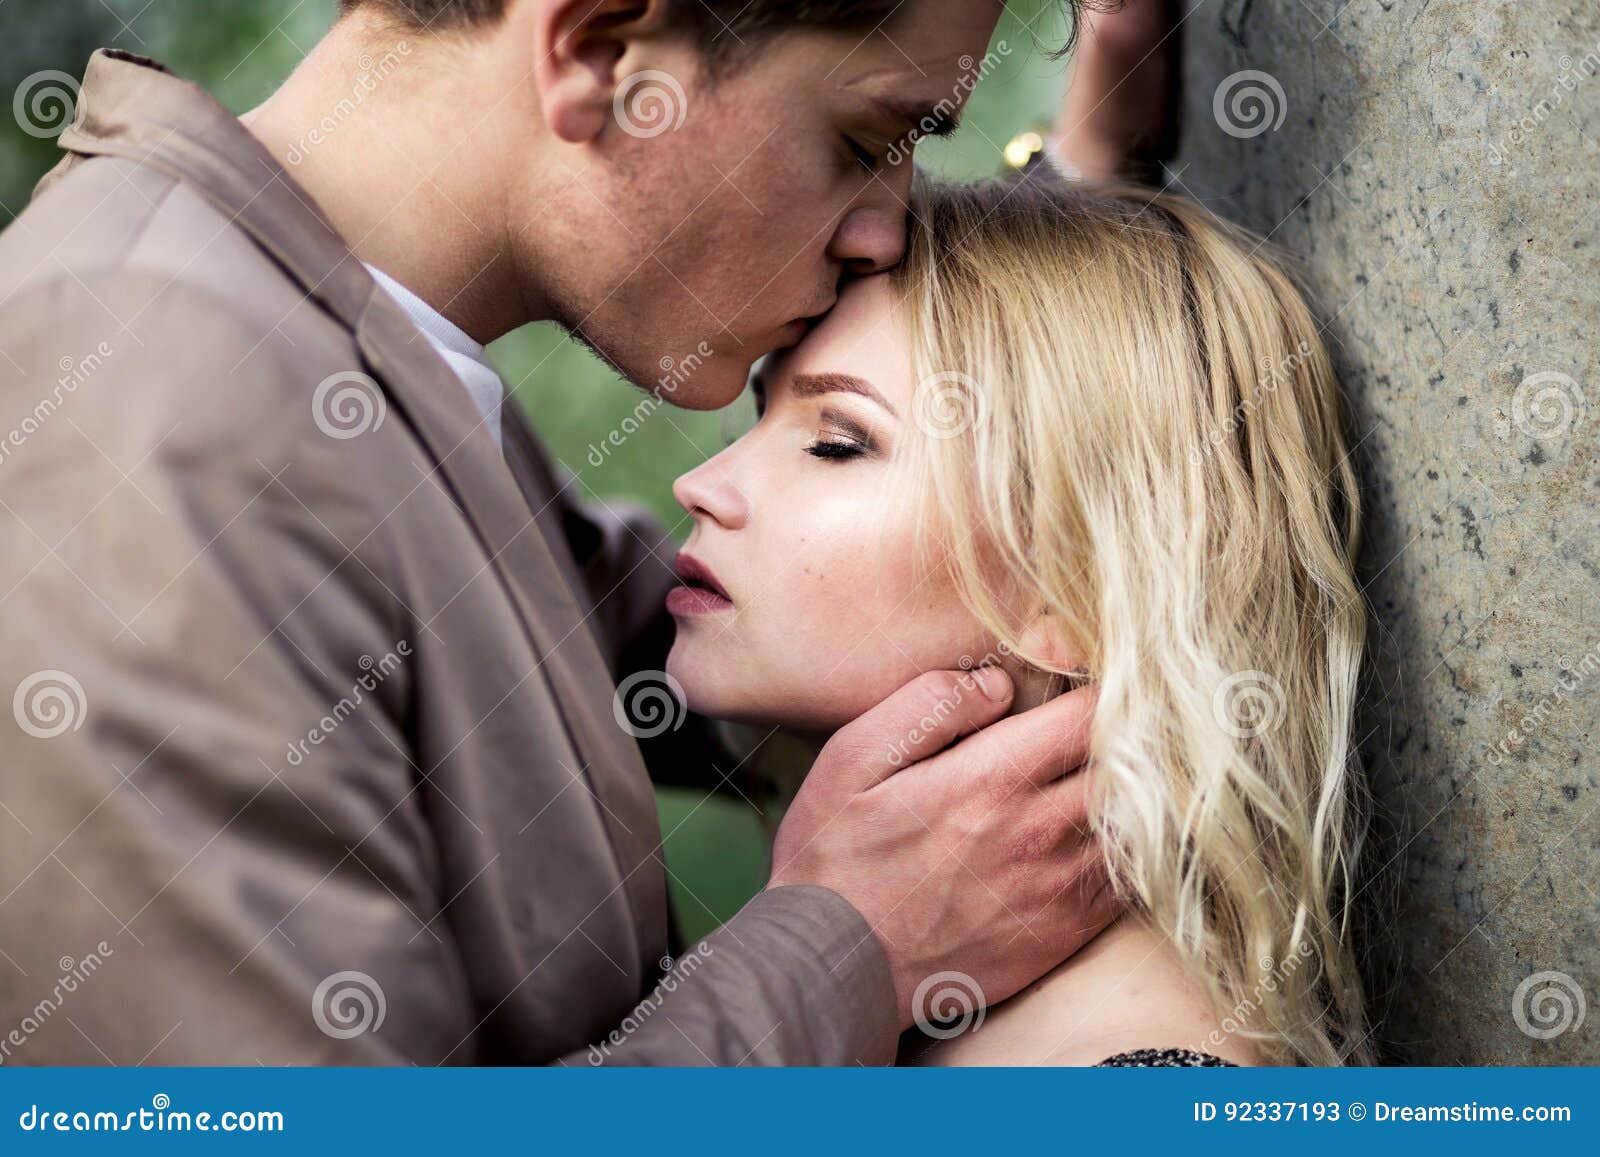 Целовать человека в лоб. Поцелуй в лоб. Человек целует другого в лоб. Мужчина целует женщину в лоб. Женщина целует женщину в лоб.